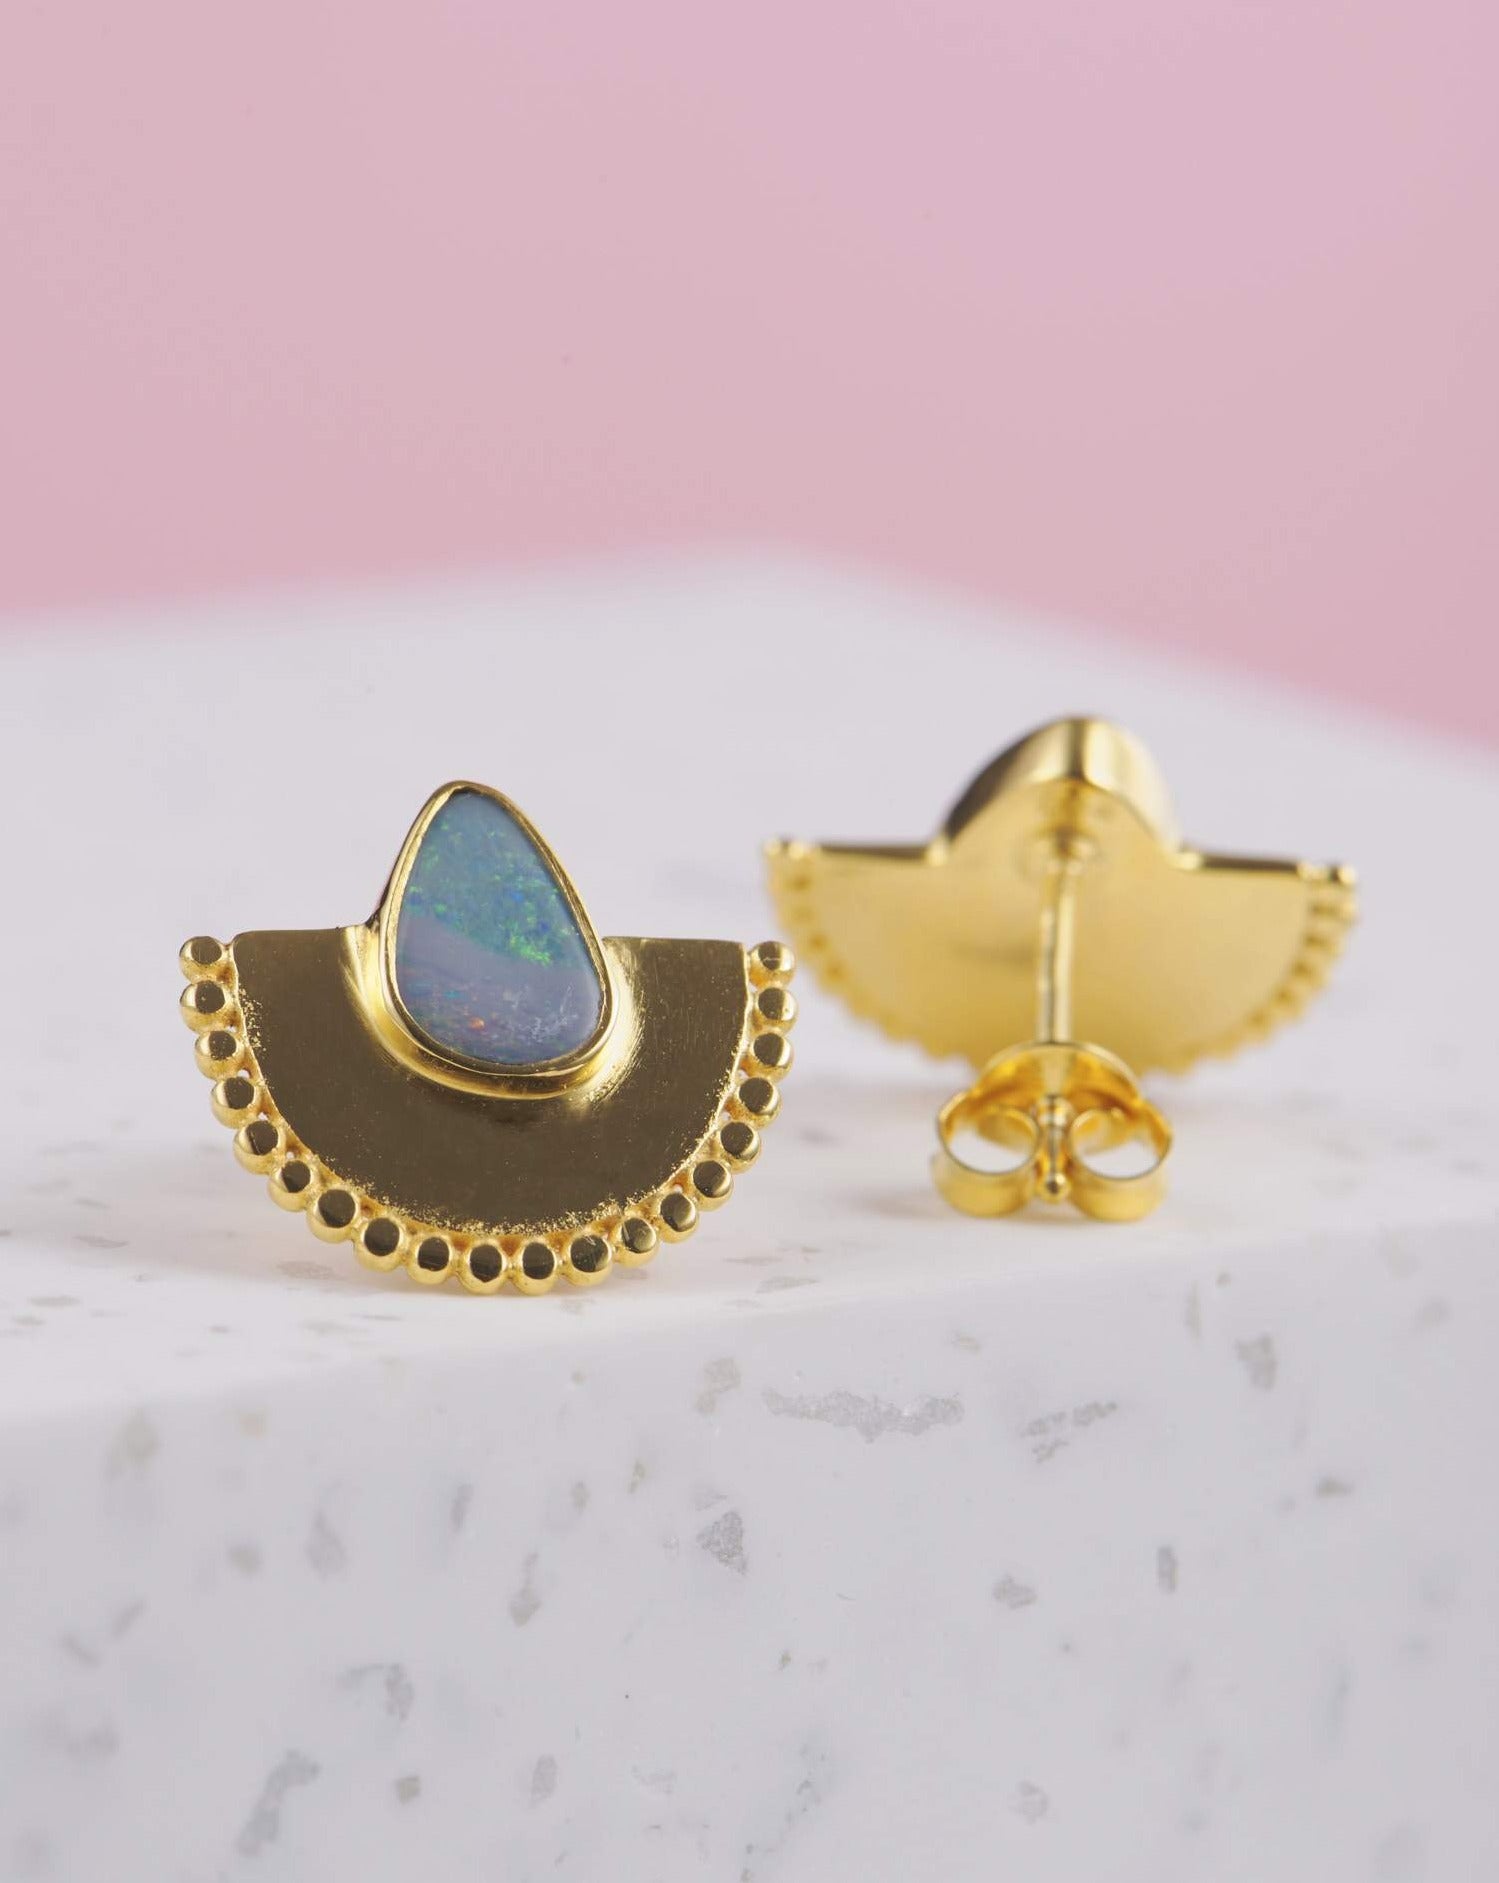 Handgemachte Ohrringe mit Opal Steinen | 925 Silber - 3 Mikron Vergoldung | Fair und umweltschonend auf Bali handgefertigt | VERLAN Jewellery | Fairfashion